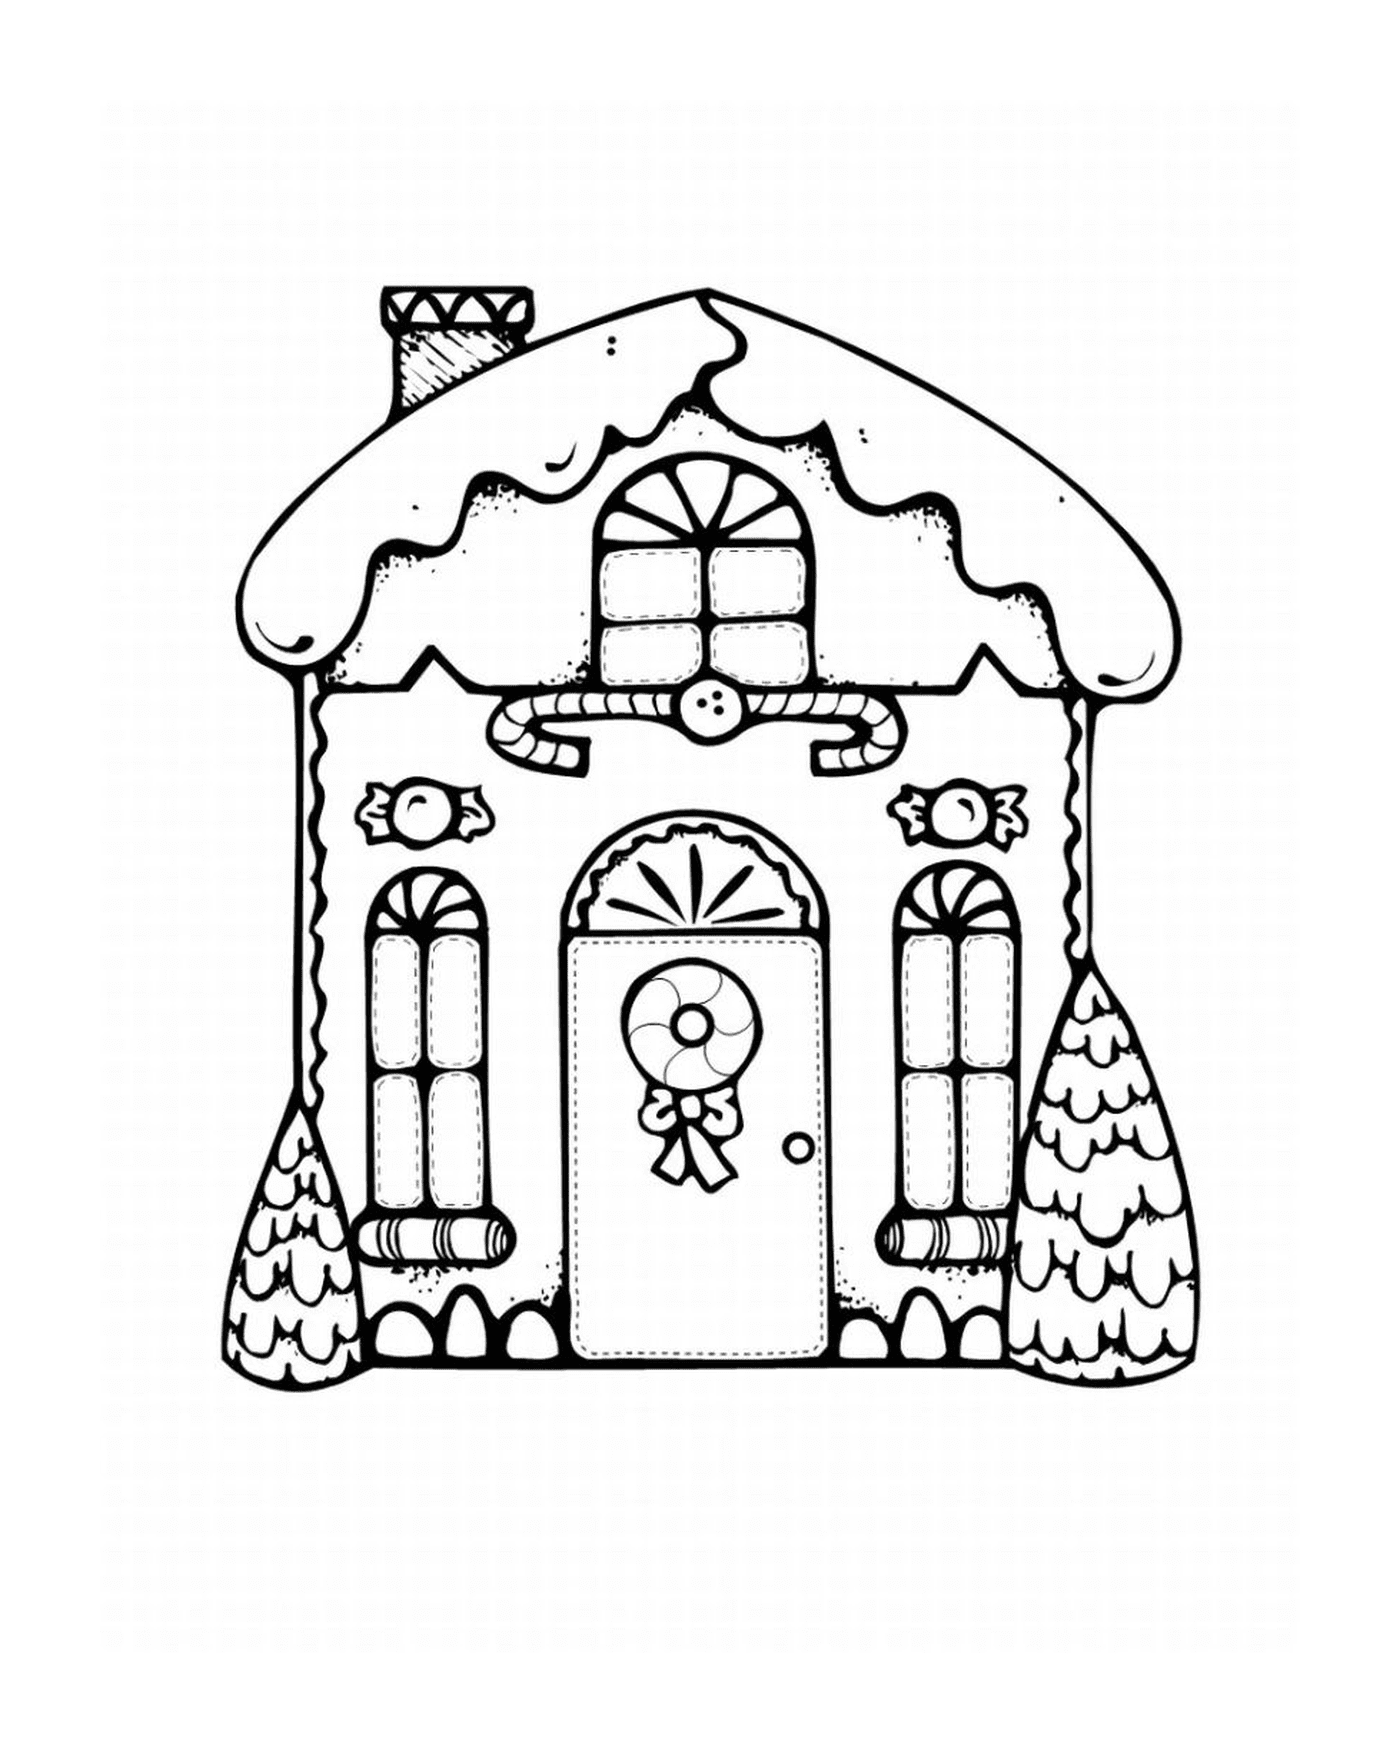   Magnifique maison de Noël le 25 décembre 